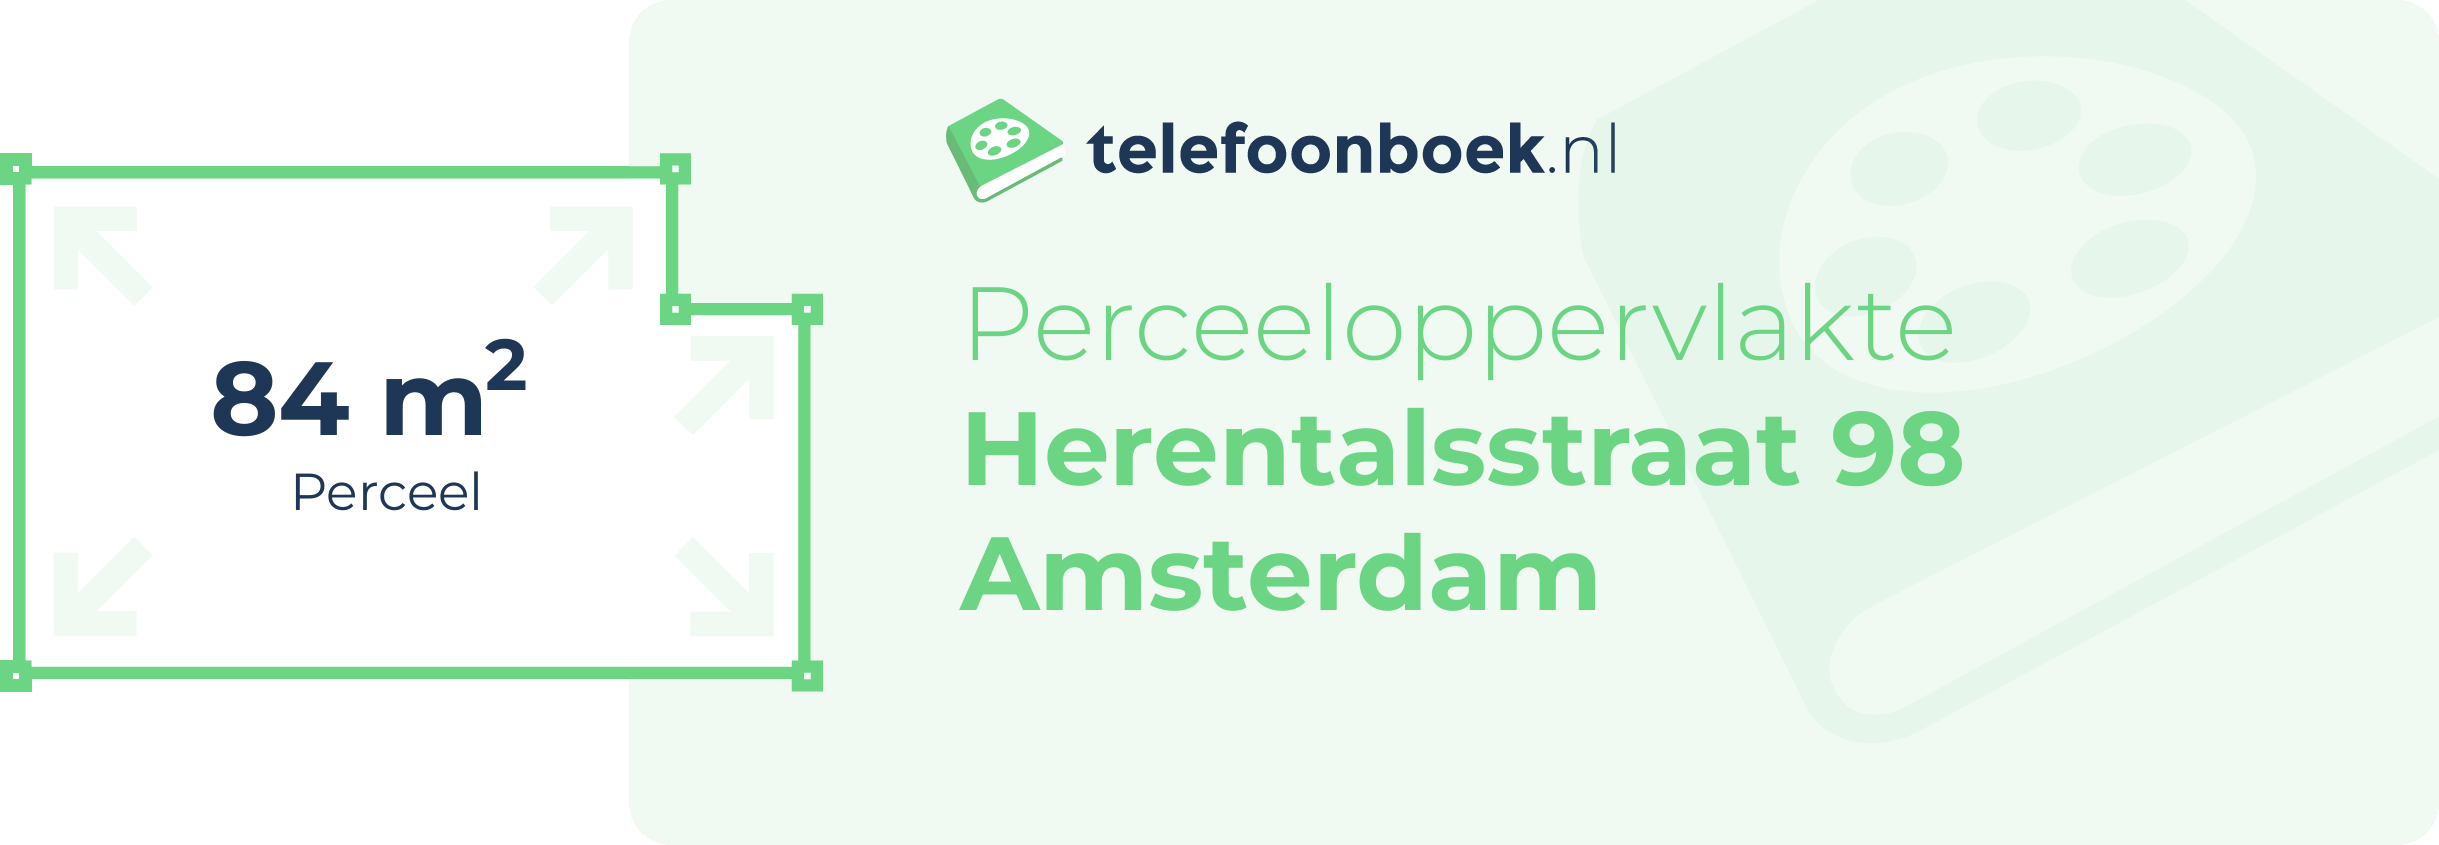 Perceeloppervlakte Herentalsstraat 98 Amsterdam